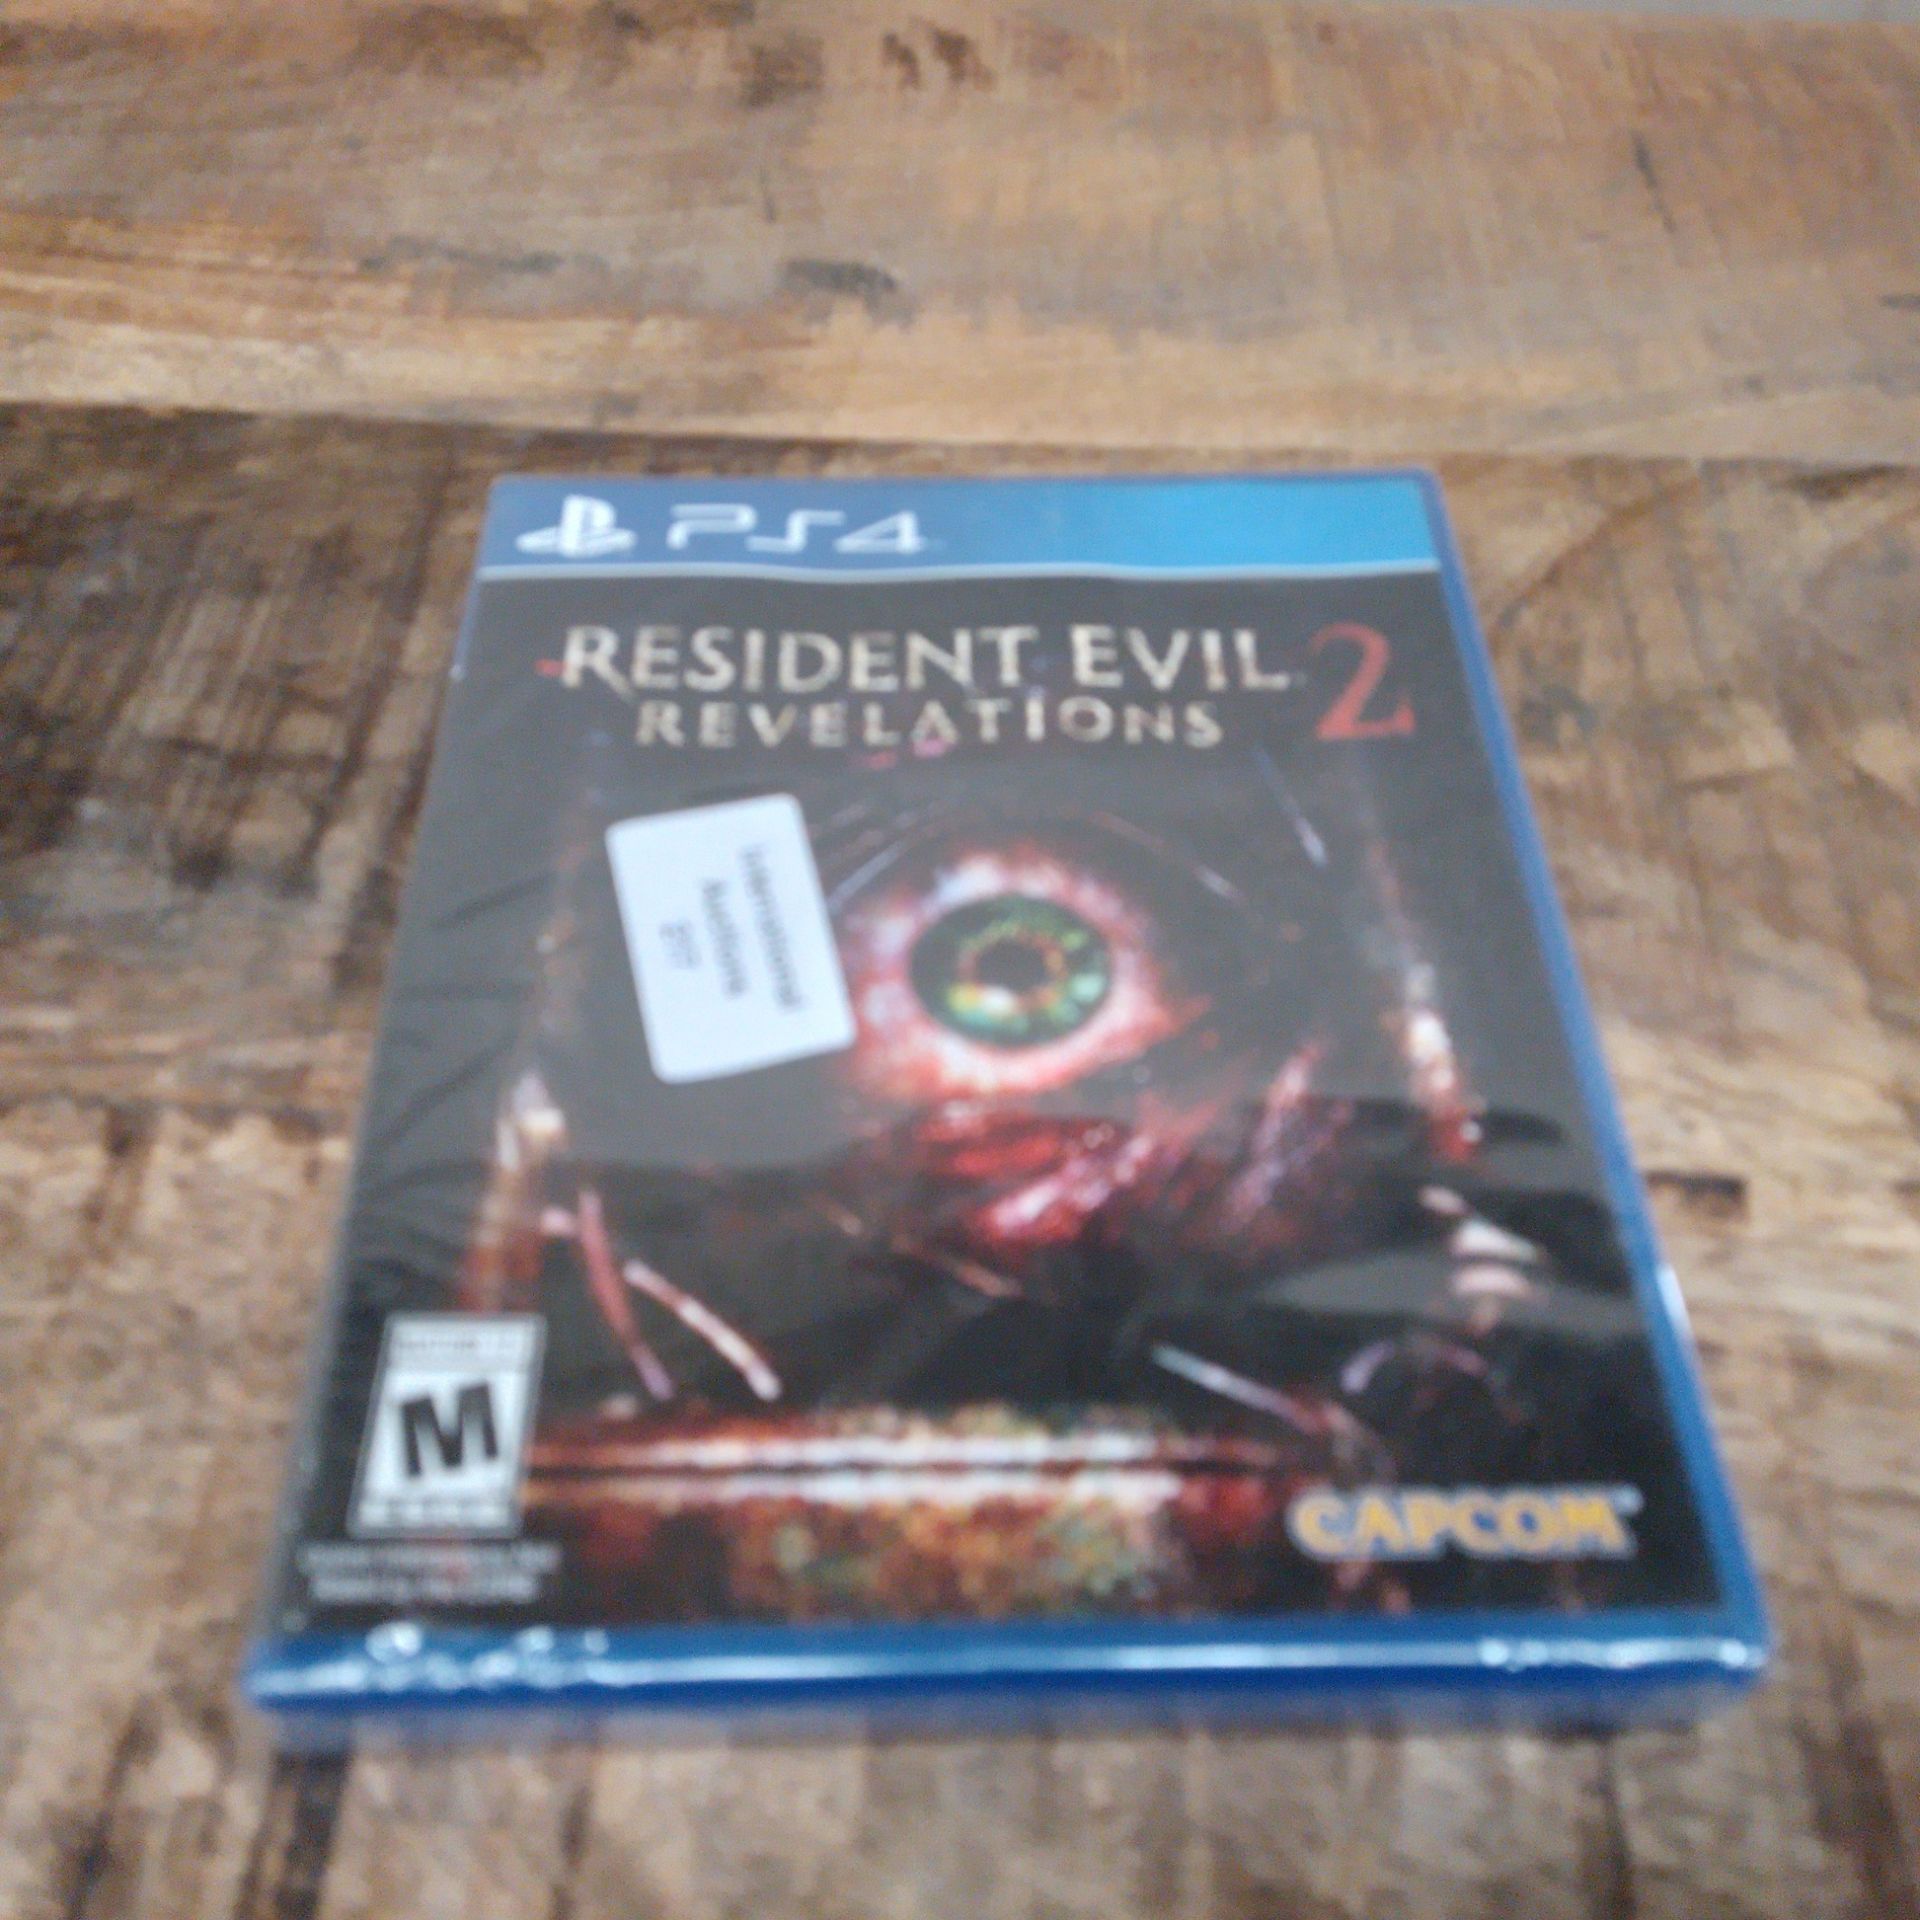 RRP £28.43 Resident Evil: Revelations 2 - Image 2 of 2